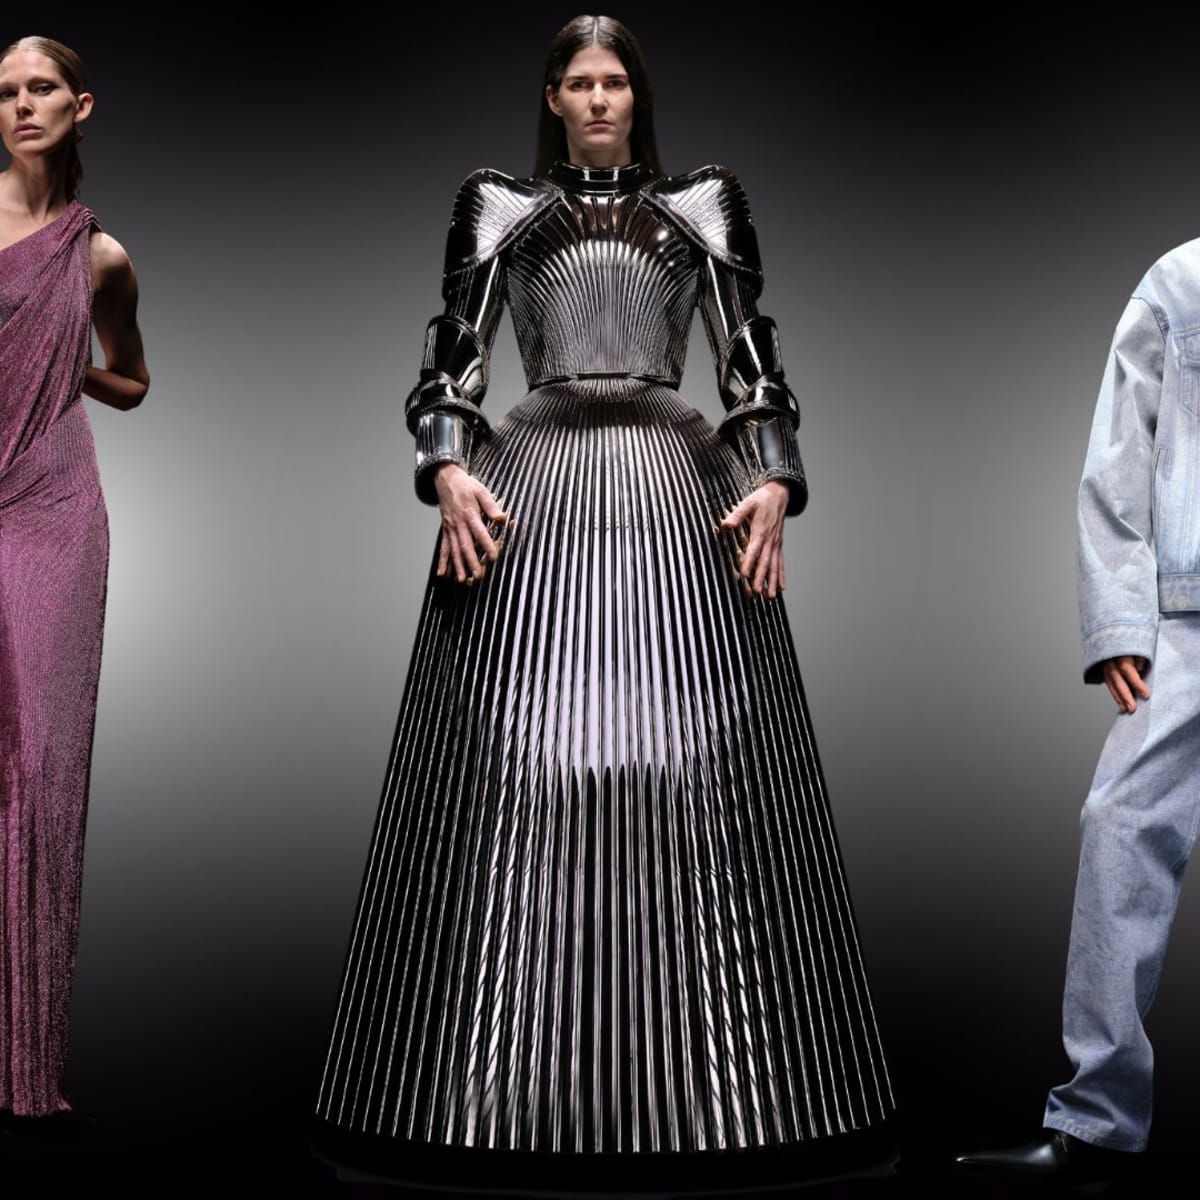 Balenciaga Demna Gvasalia Show Couture Dresses Meaning